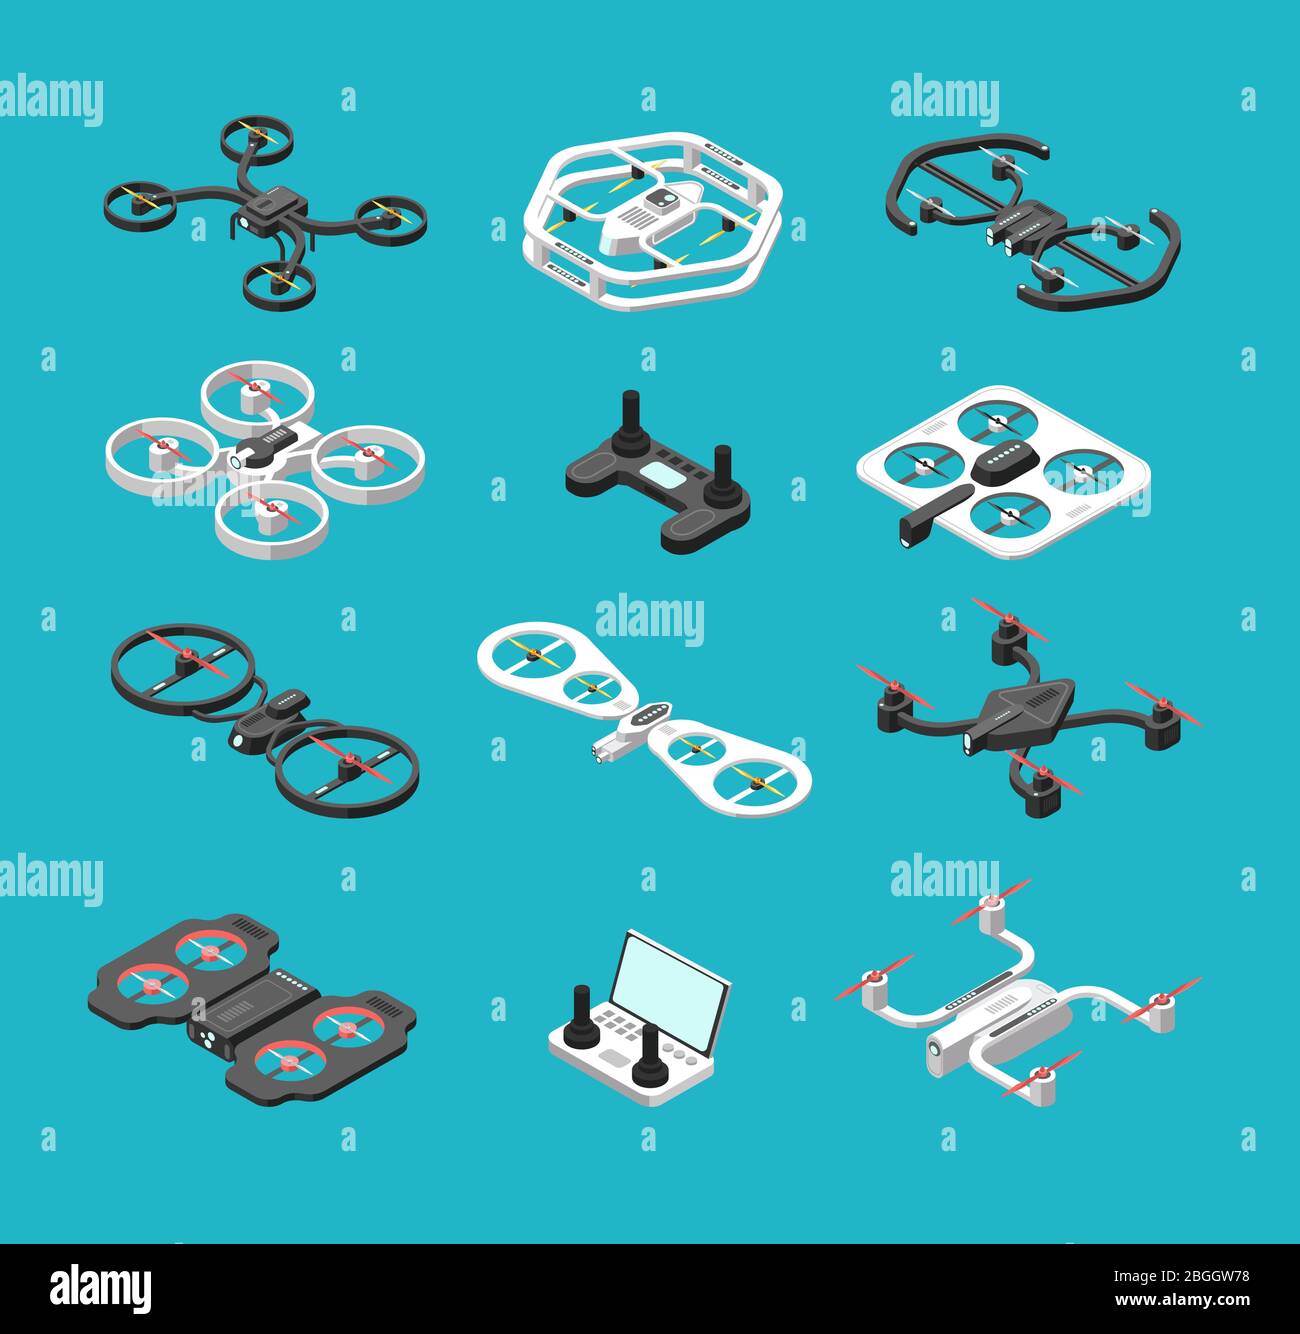 Diversi droni isometrici 3d. Set vettoriale per consegna aerea e fotomotografia. Robot aeronautico, illustrazione wireless dell'elica di controllo Illustrazione Vettoriale